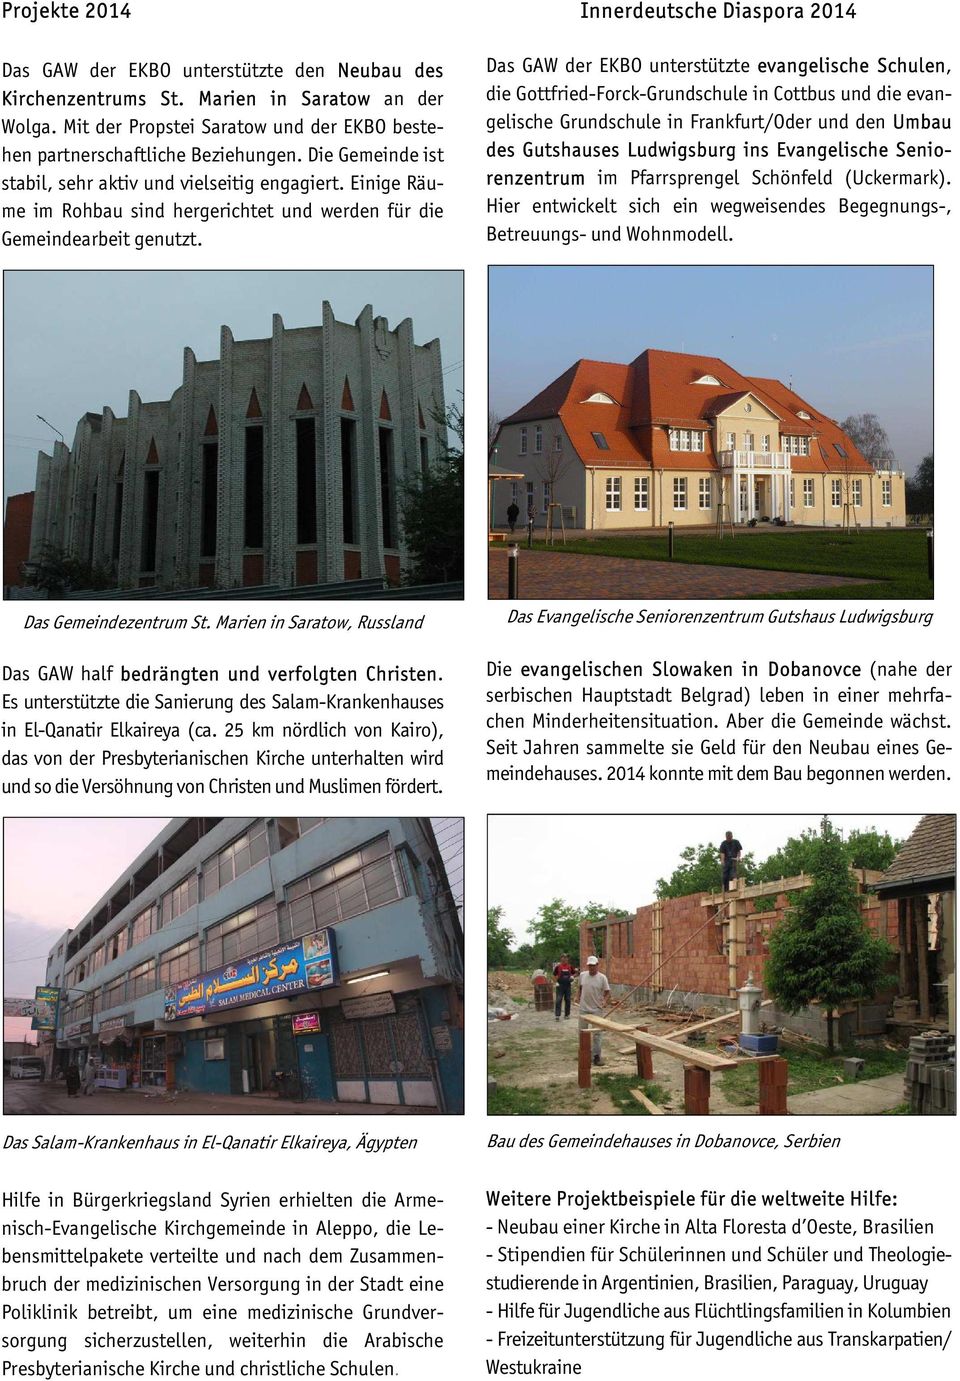 Innerdeutsche Diaspora 2014 Das GAW der EKBO unterstützte evangelische Schulen, die Gottfried-Forck-Grundschule in Cottbus und die evangelische Grundschule in Frankfurt/Oder und den Umbau des